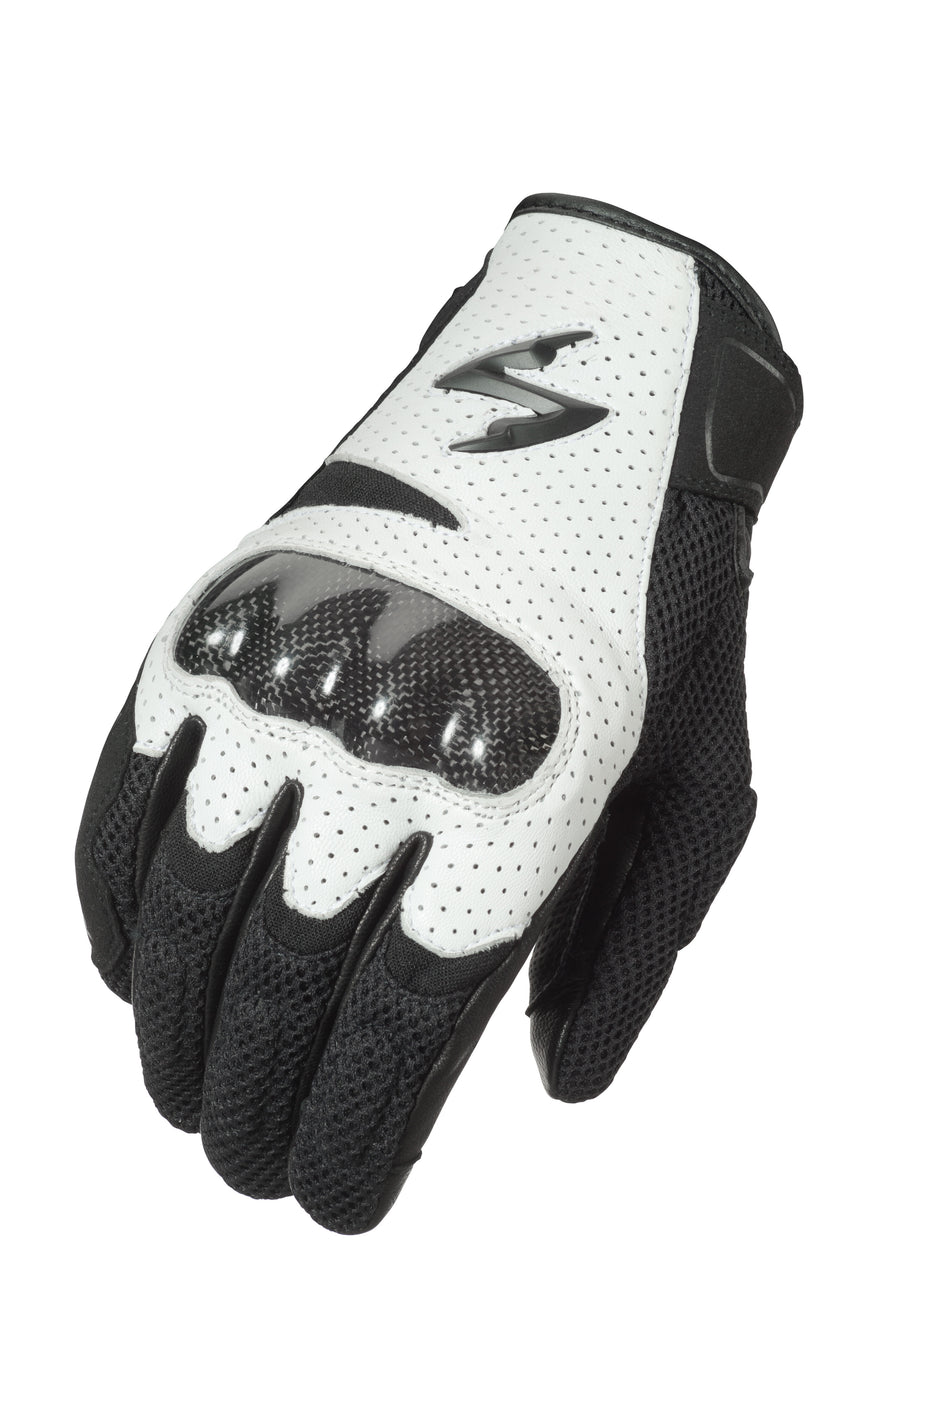 SCORPION EXO Vortex Air Gloves White Sm G36-053